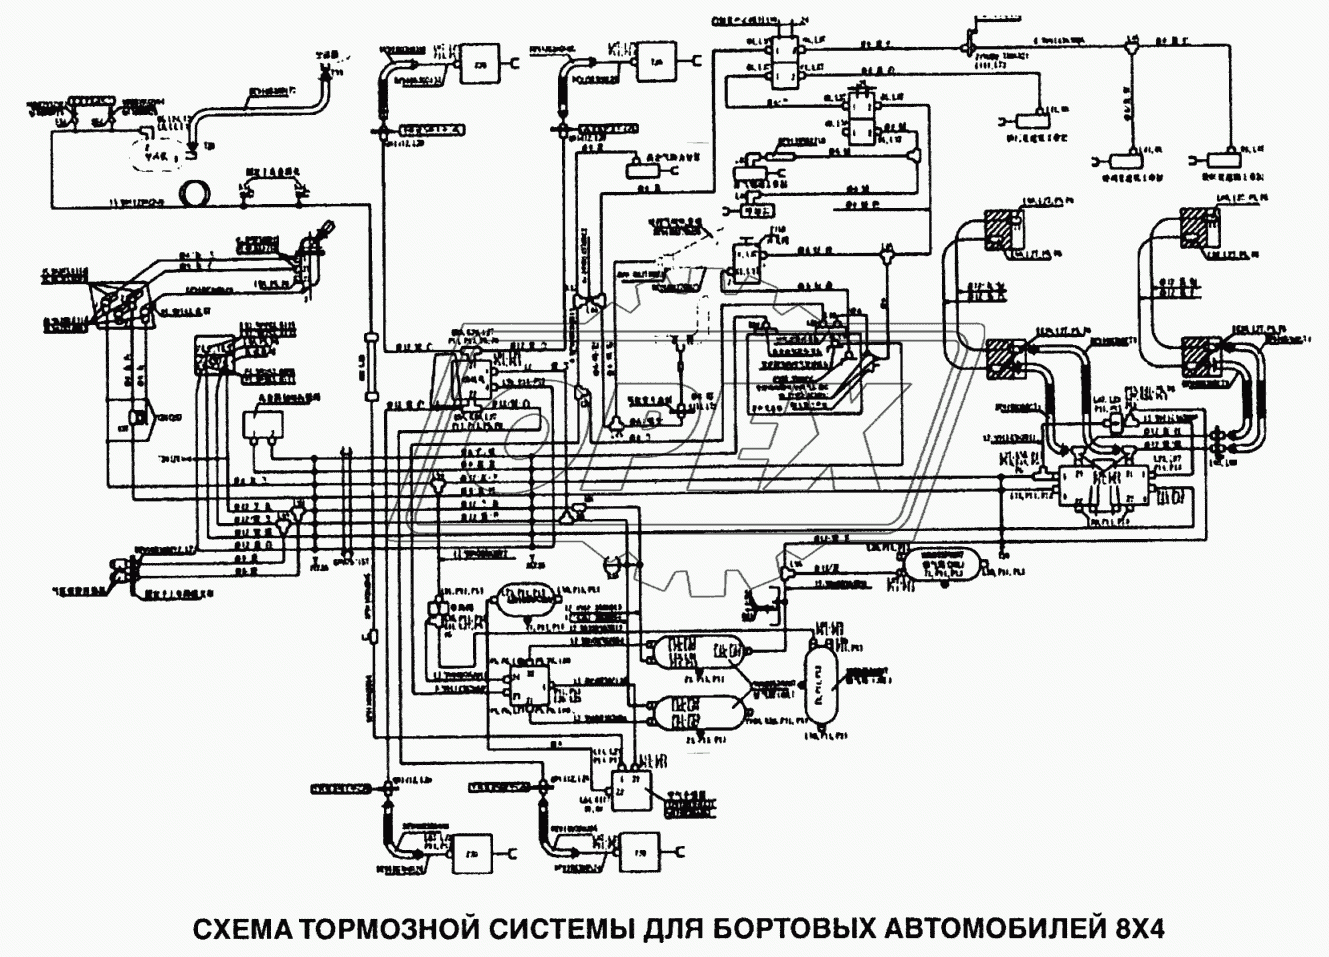 Схема тормозной системы для бортовых автомобилей 8x4